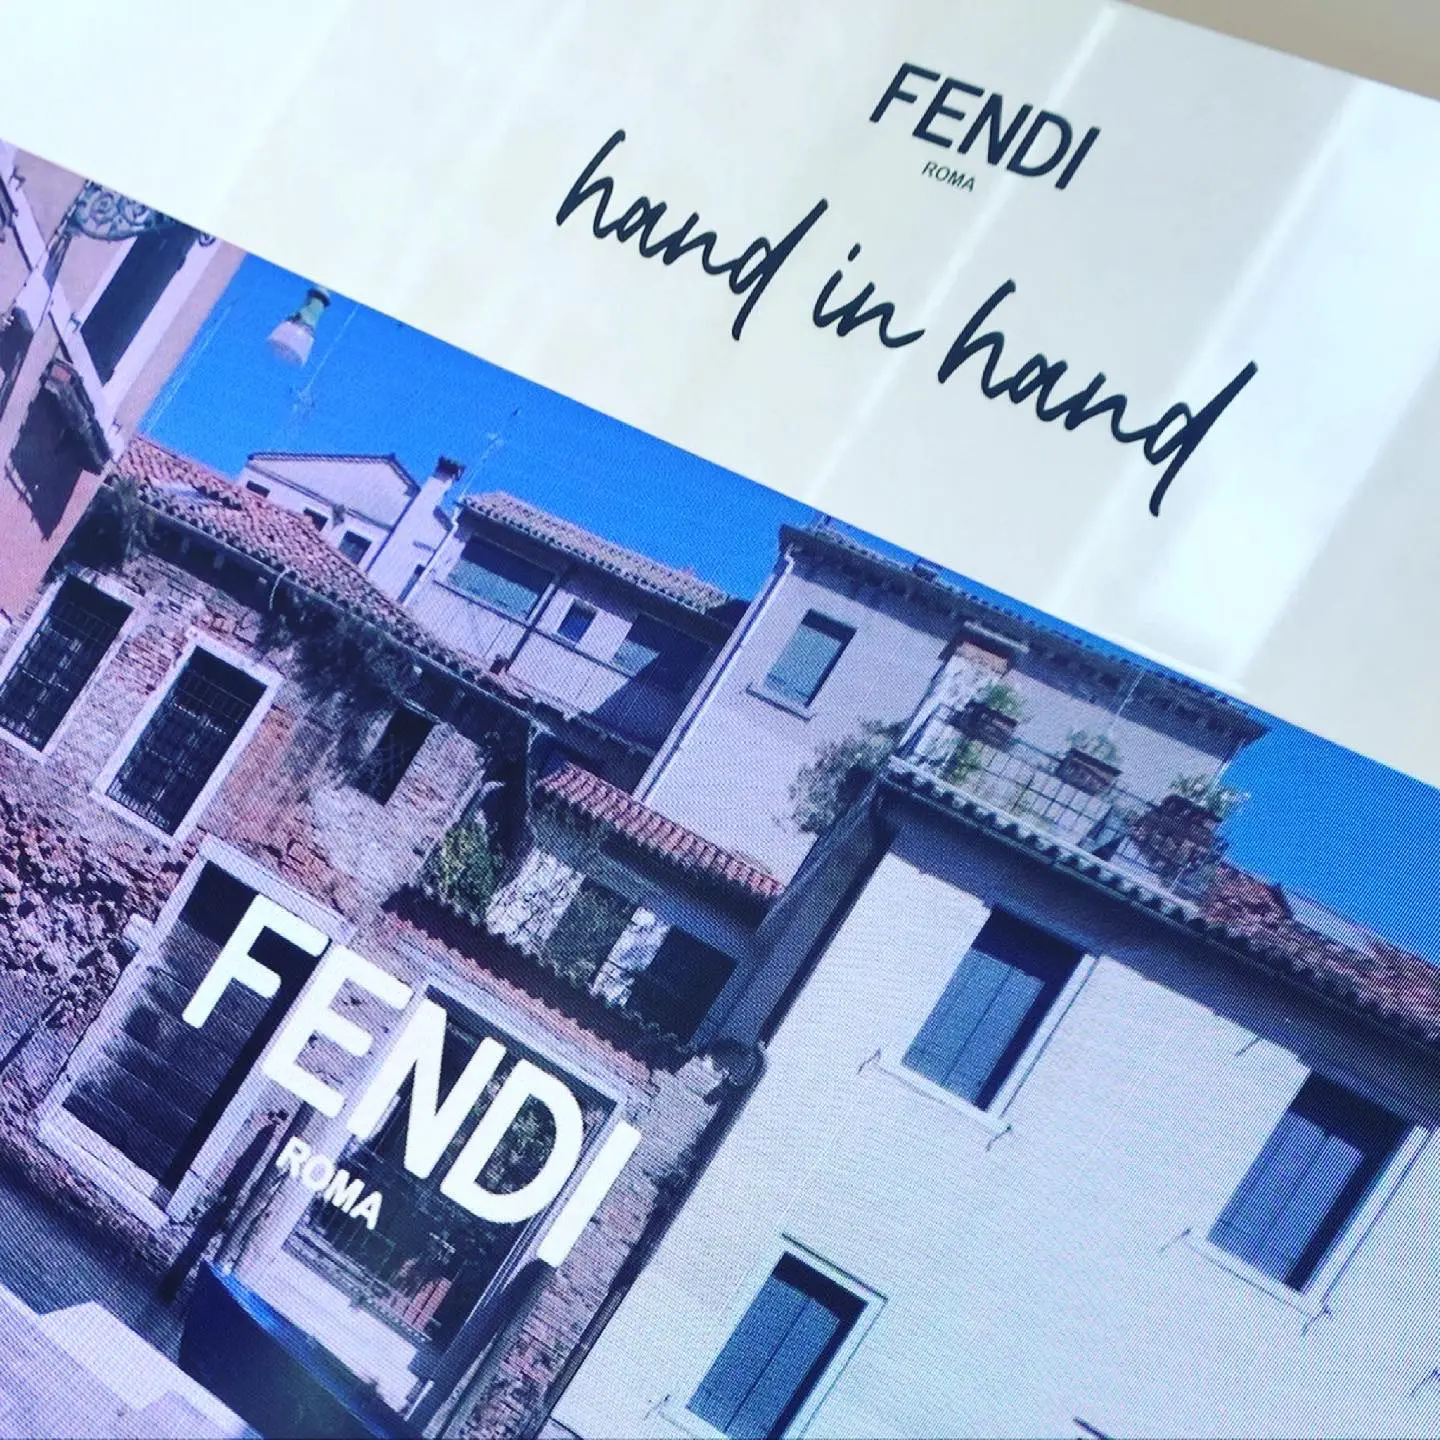 FENDI hand in hand_1_2